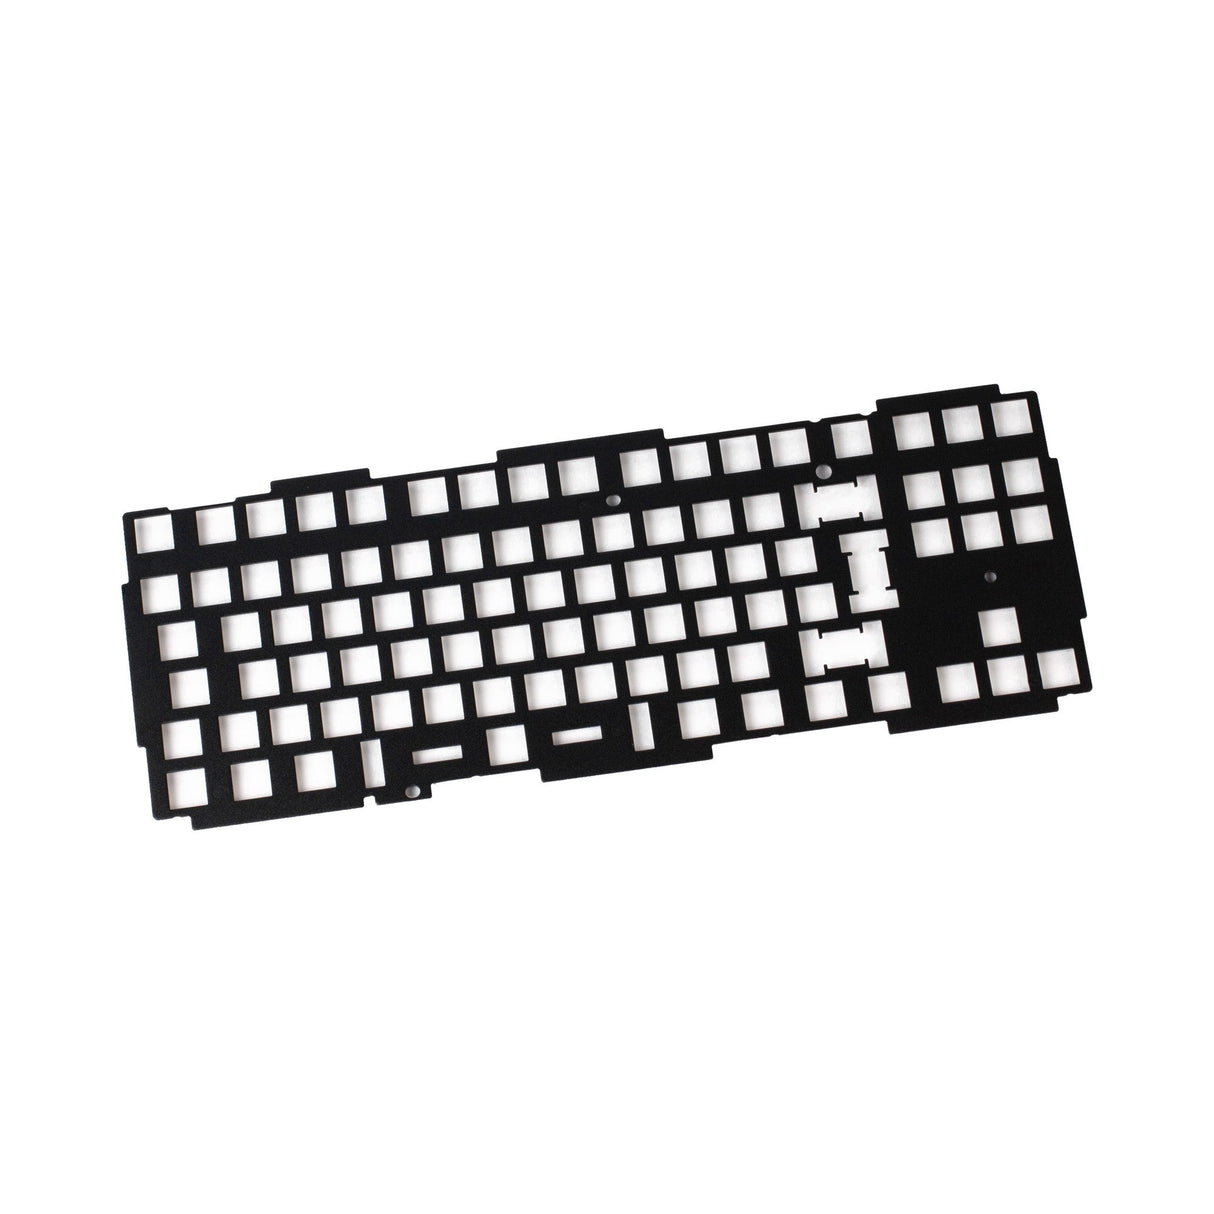 Keychron Q3 keyboard knob FR4 plate ISO layout